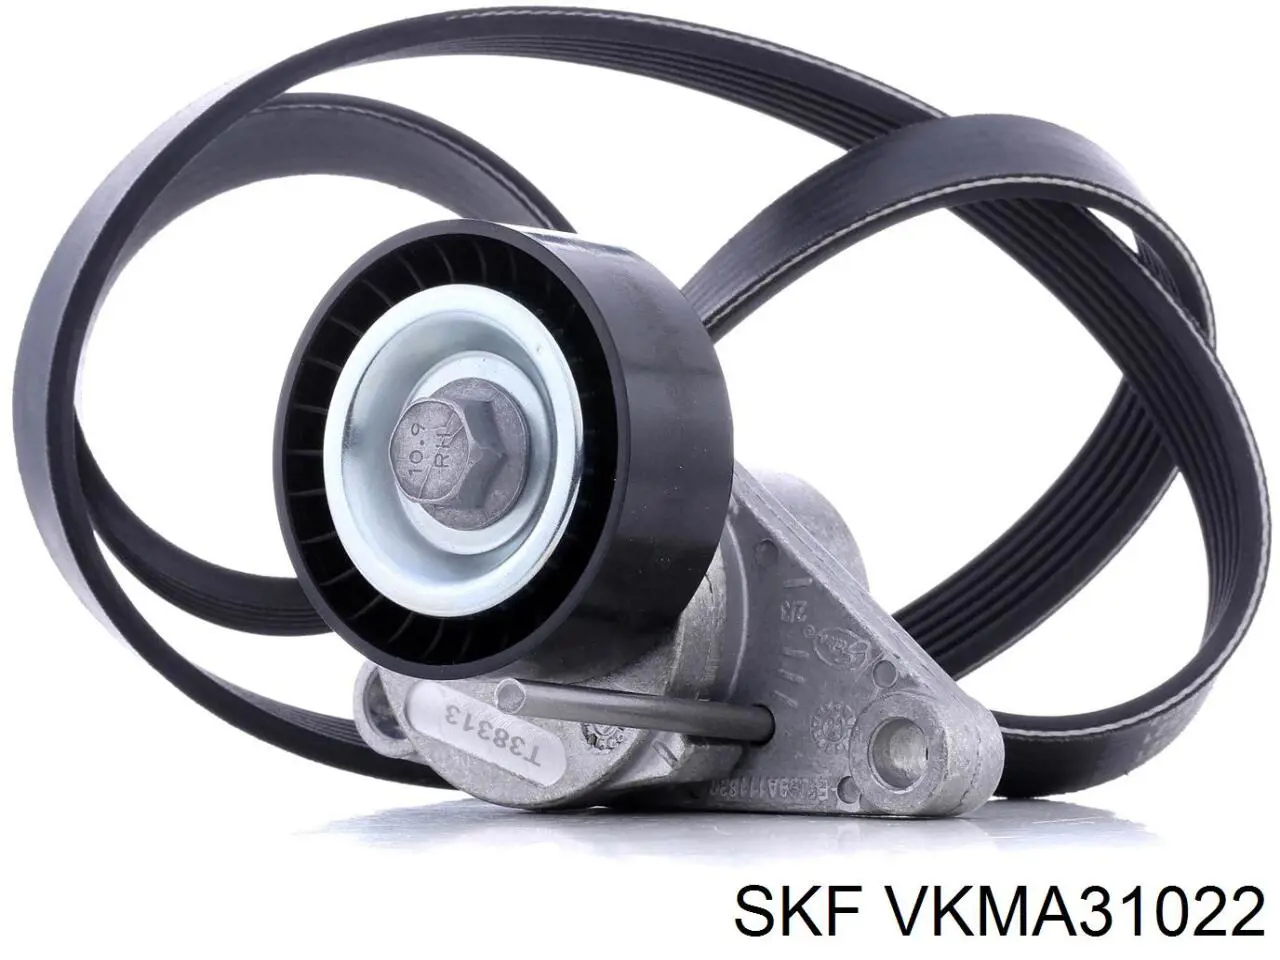 VKMA 31022 SKF correa de transmisión